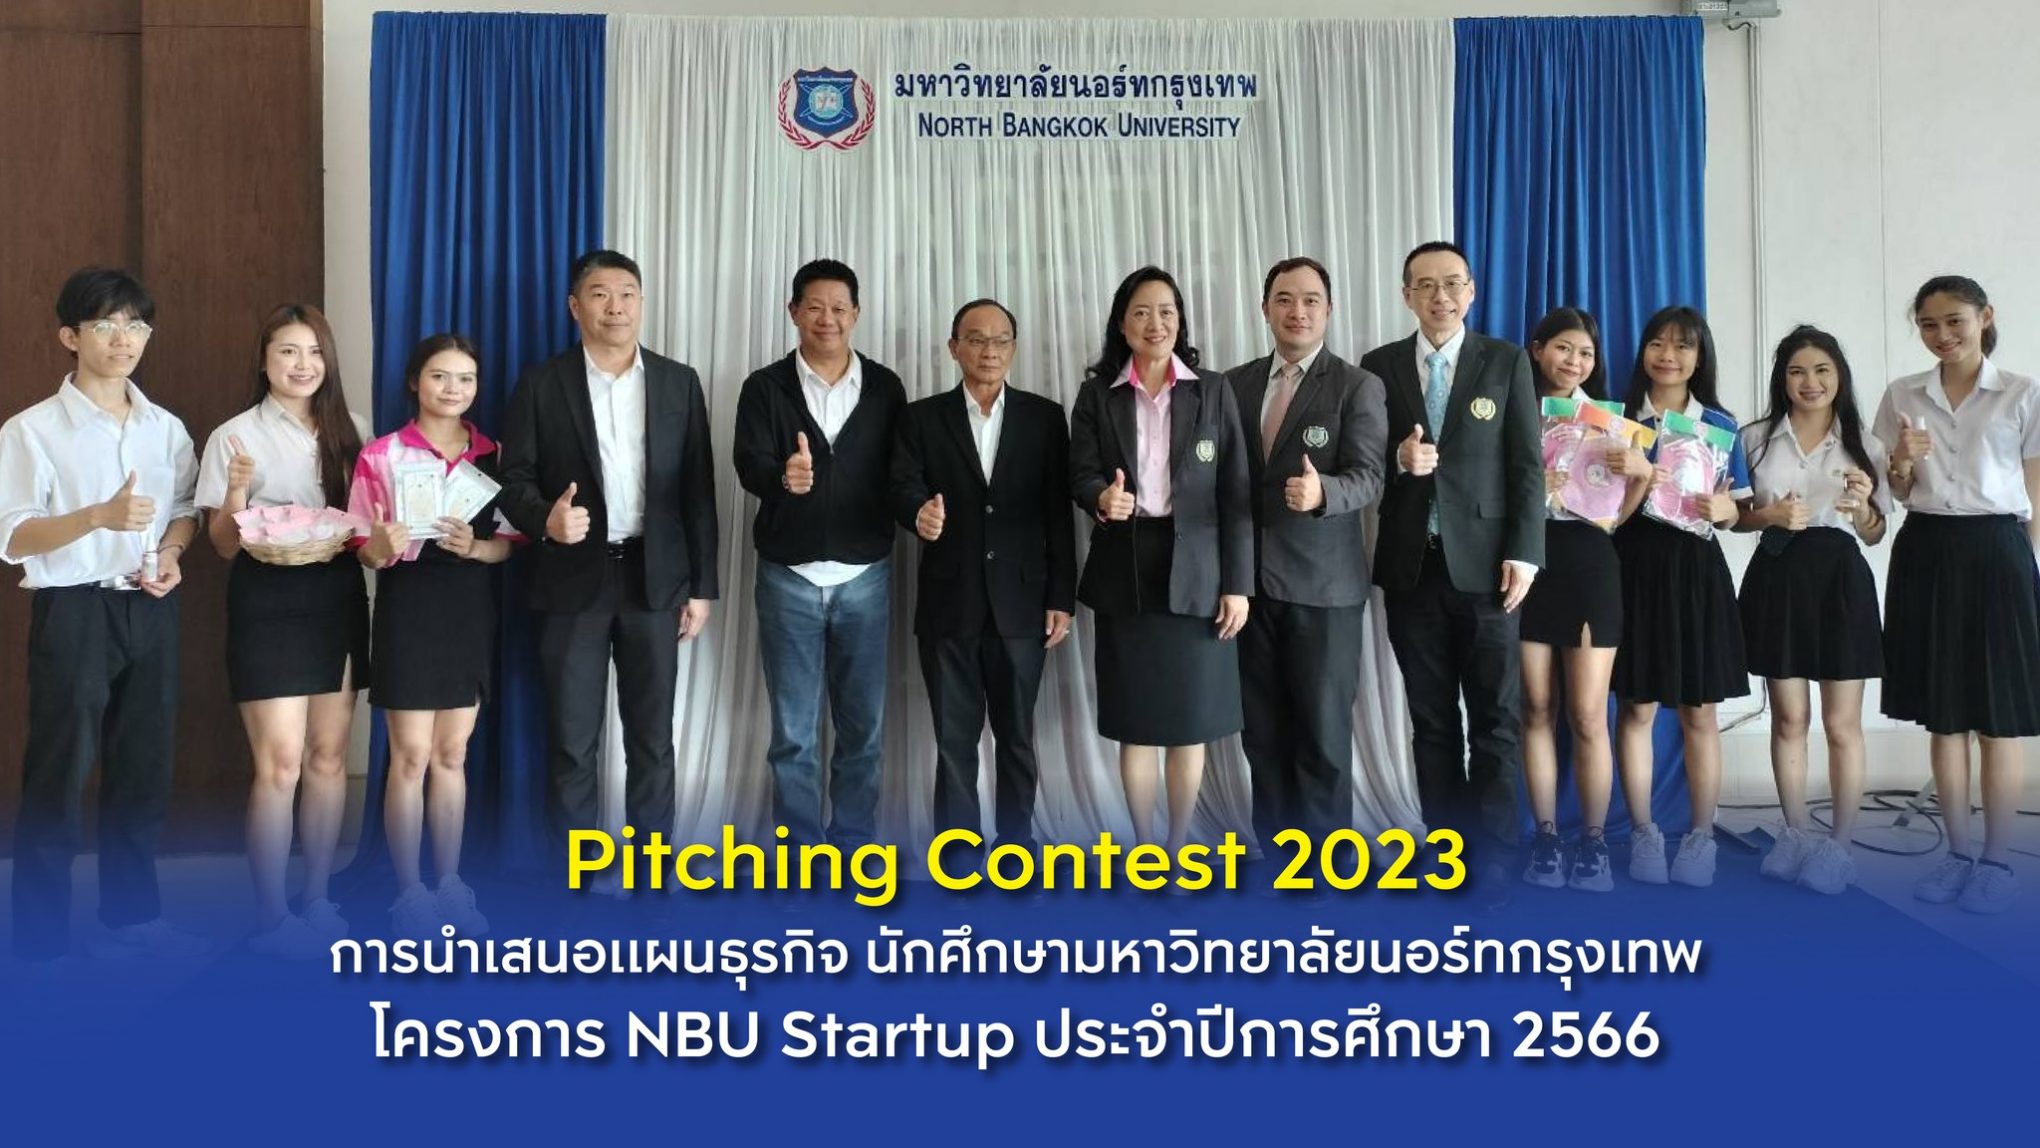 นักศึกษามหาวิทยาลัยนอร์ทกรุงเทพ ร่วมกิจกรรม Pitching Contest 2023 โครงการ NBU Startup ประจำปีการศึกษา 2566 เพื่อเสริมสร้างทักษะการเป็นผู้ประกอบการรุ่นใหม่